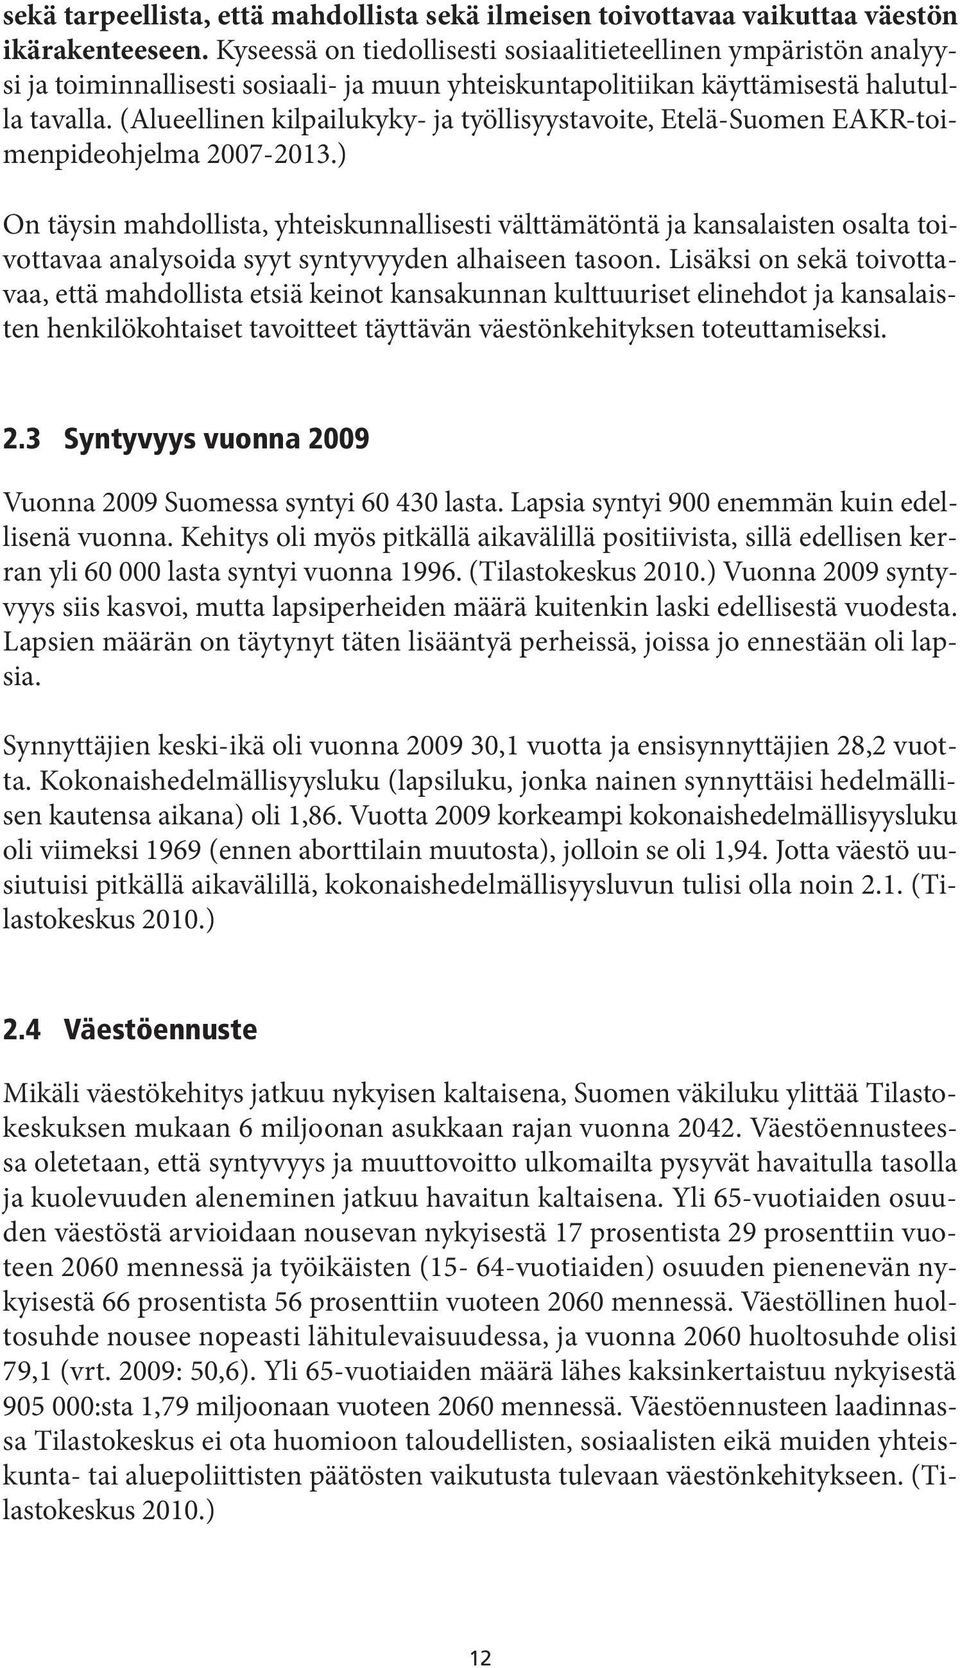 (Alueellinen kilpailukyky- ja työllisyystavoite, Etelä-Suomen EAKR-toimenpideohjelma 2007-2013.